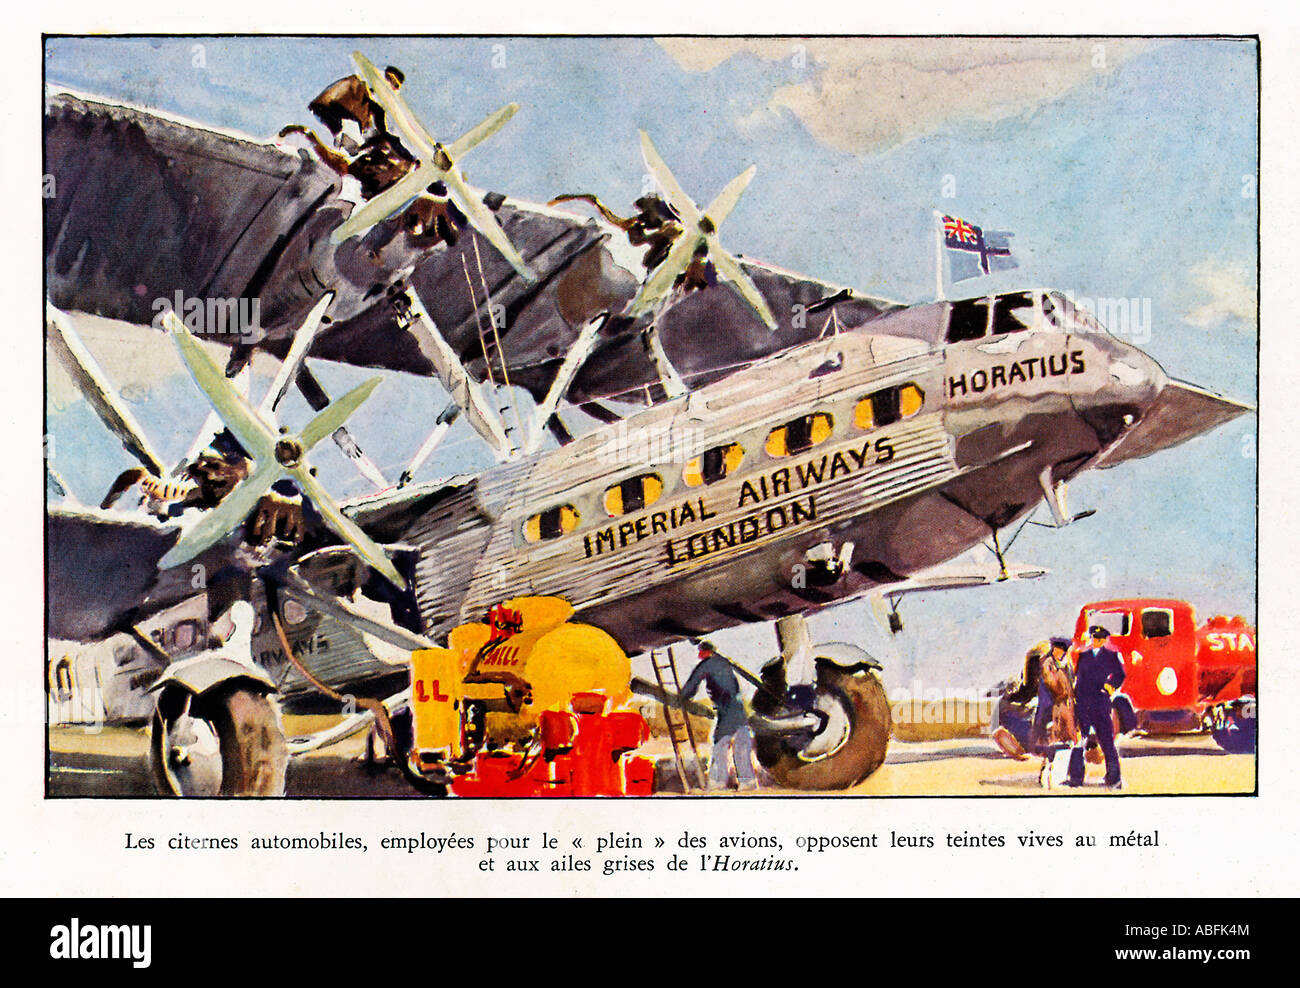 Imperial Airways Horatius 1934 magazine français illustration de l'avion Handley Page être ravitaillé Banque D'Images